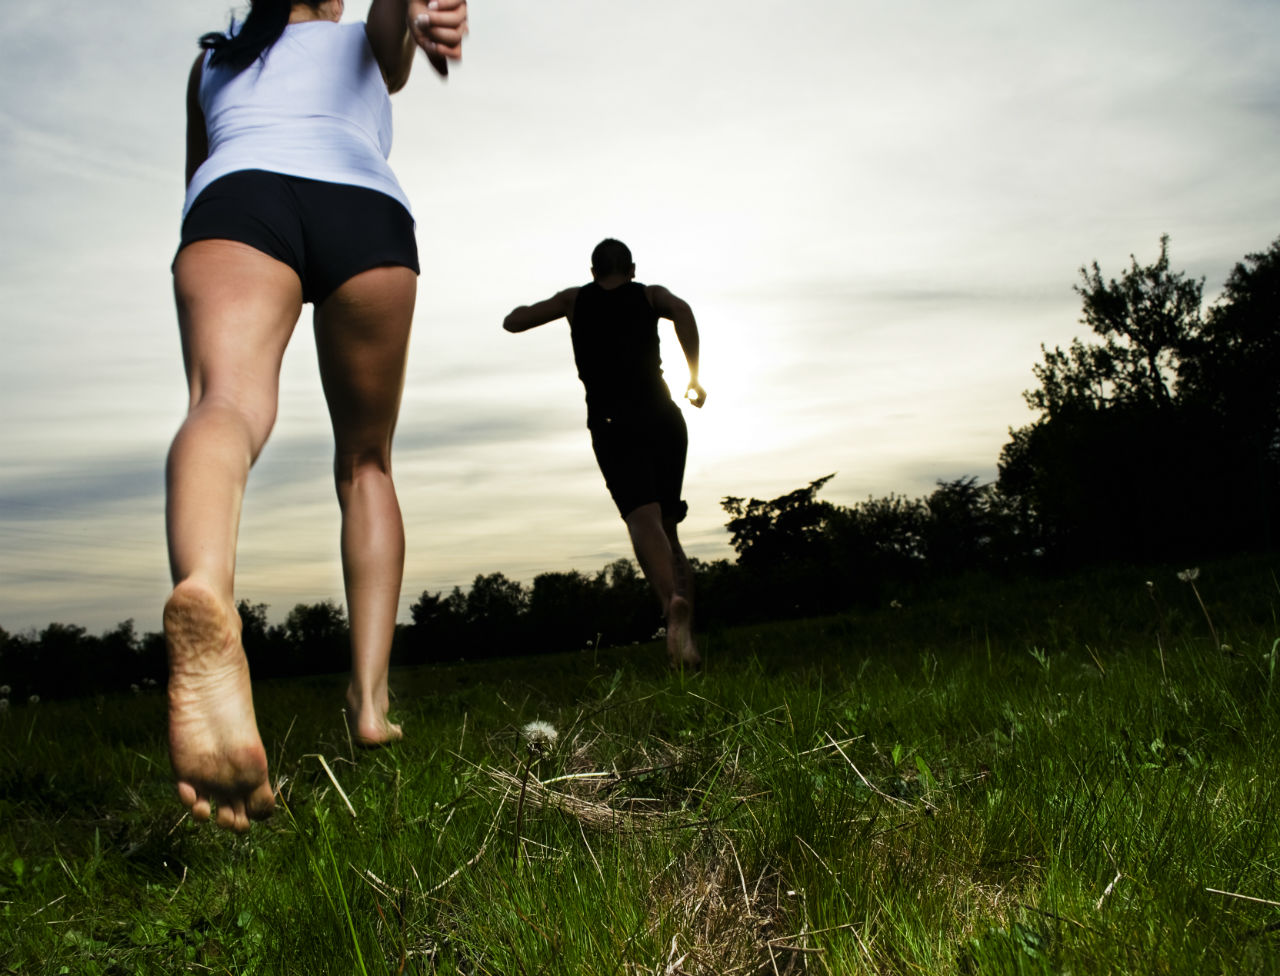 Comment les chaussures ont une influence sur notre manière de courir ?